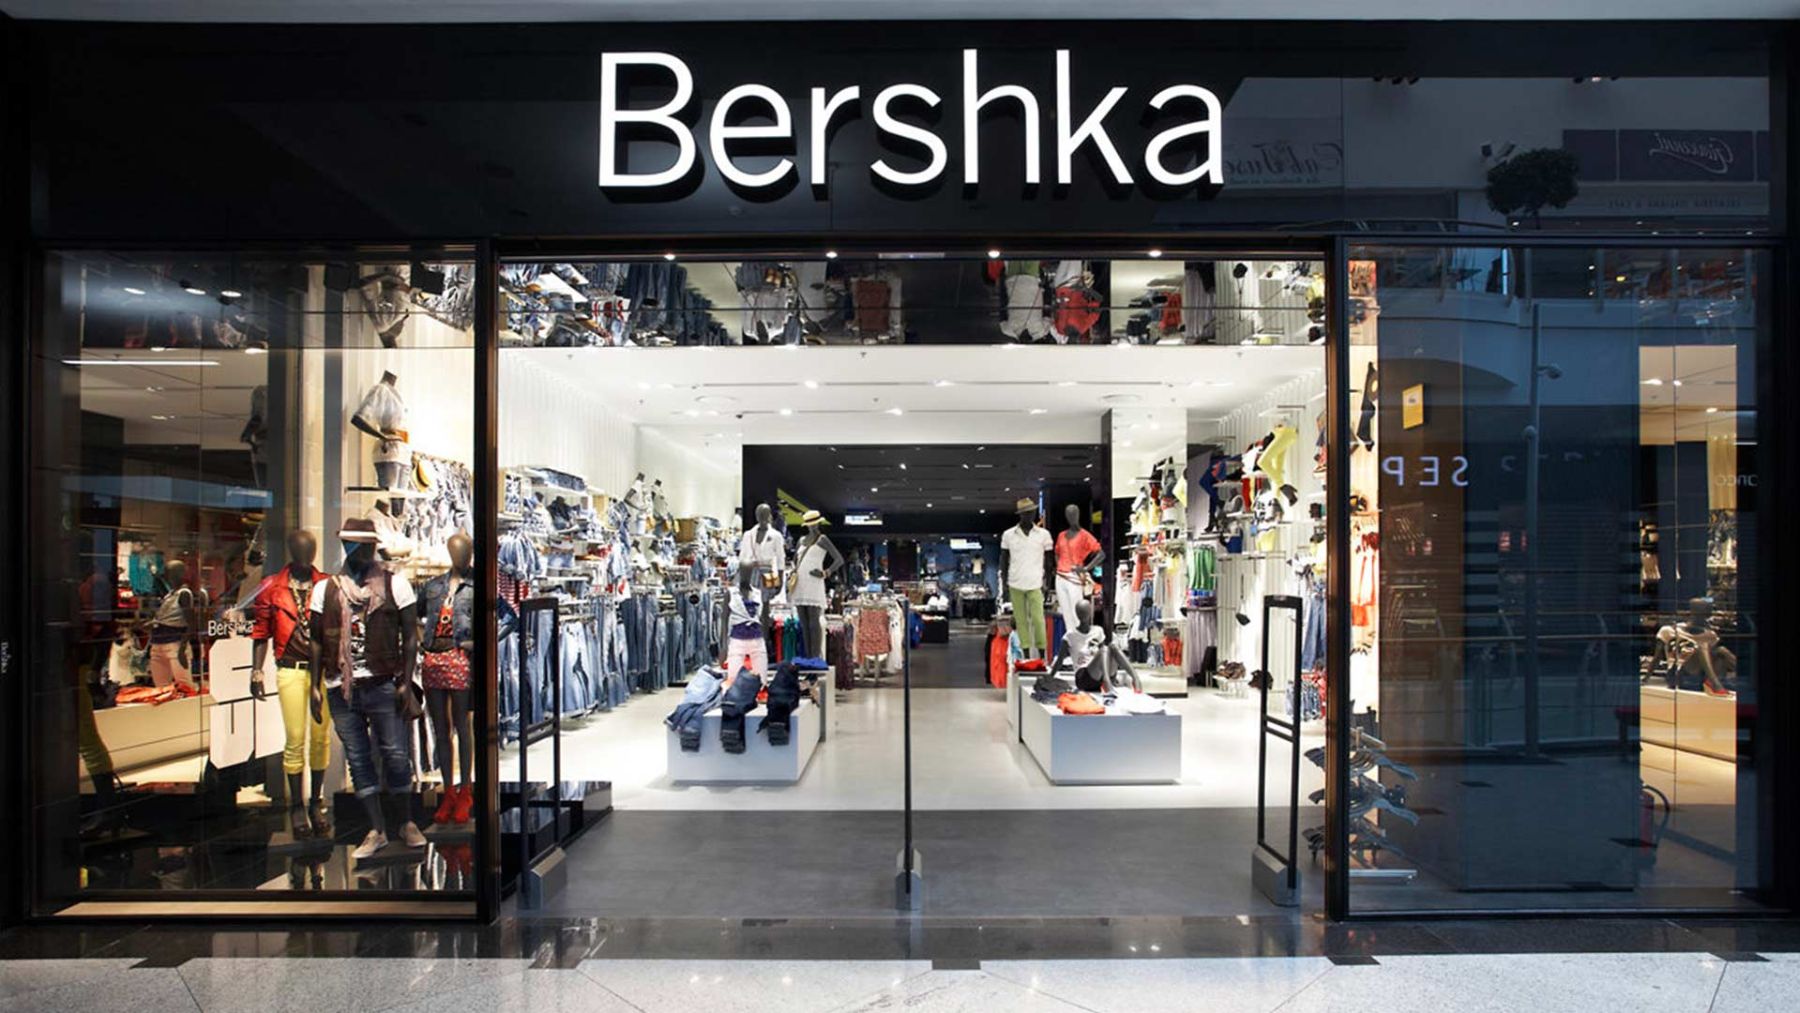 No tenemos ninguna duda de que este pantalón de Bershka va a ser un visto y no visto